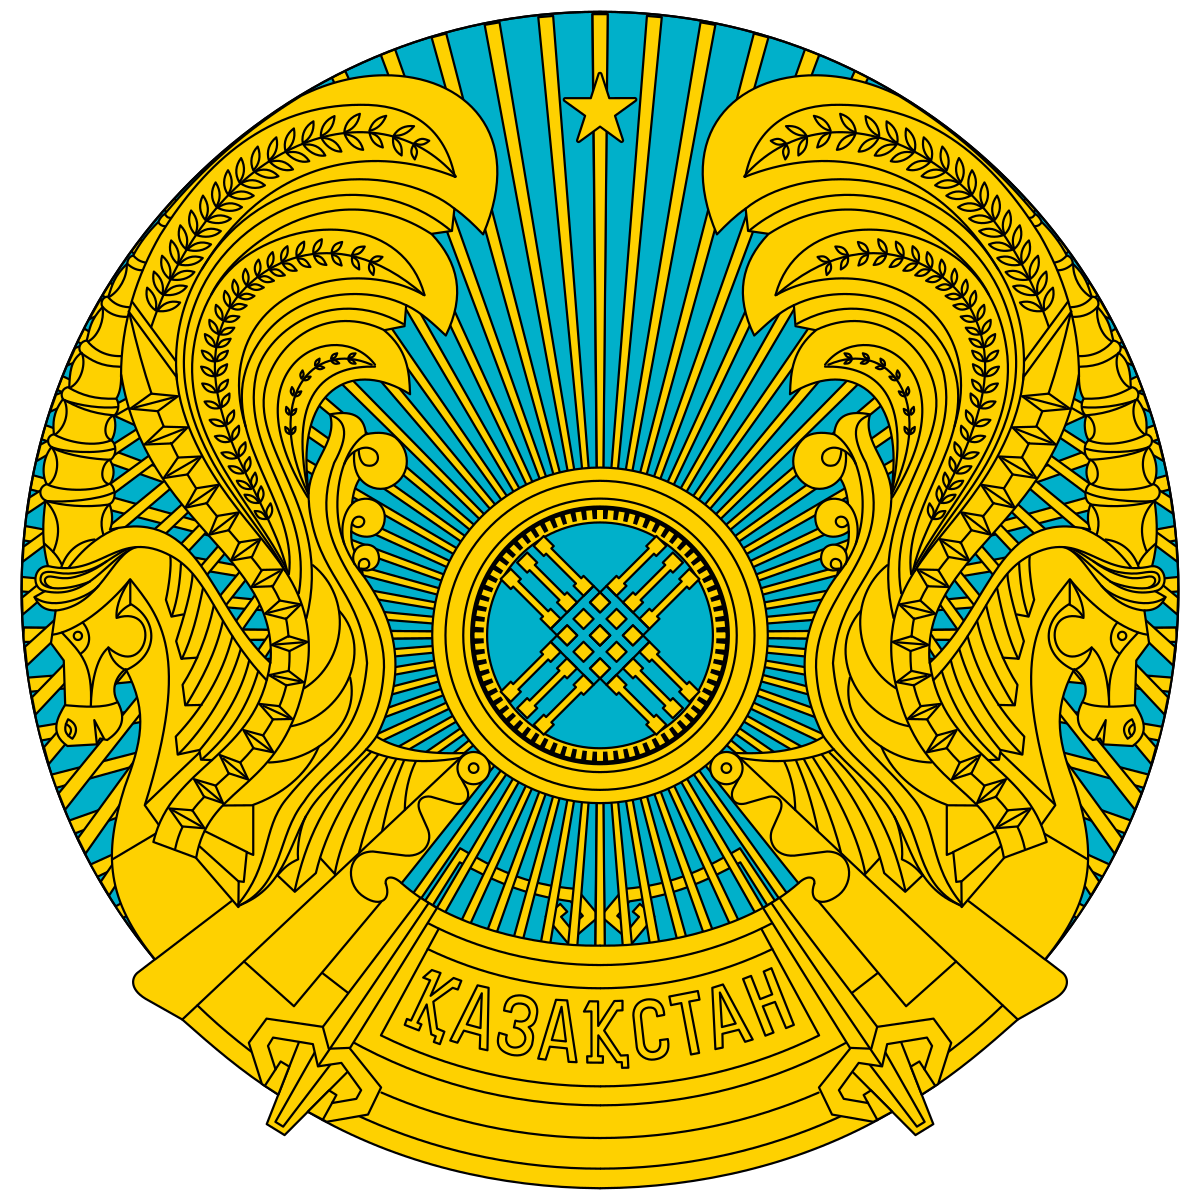 Kazakh Government